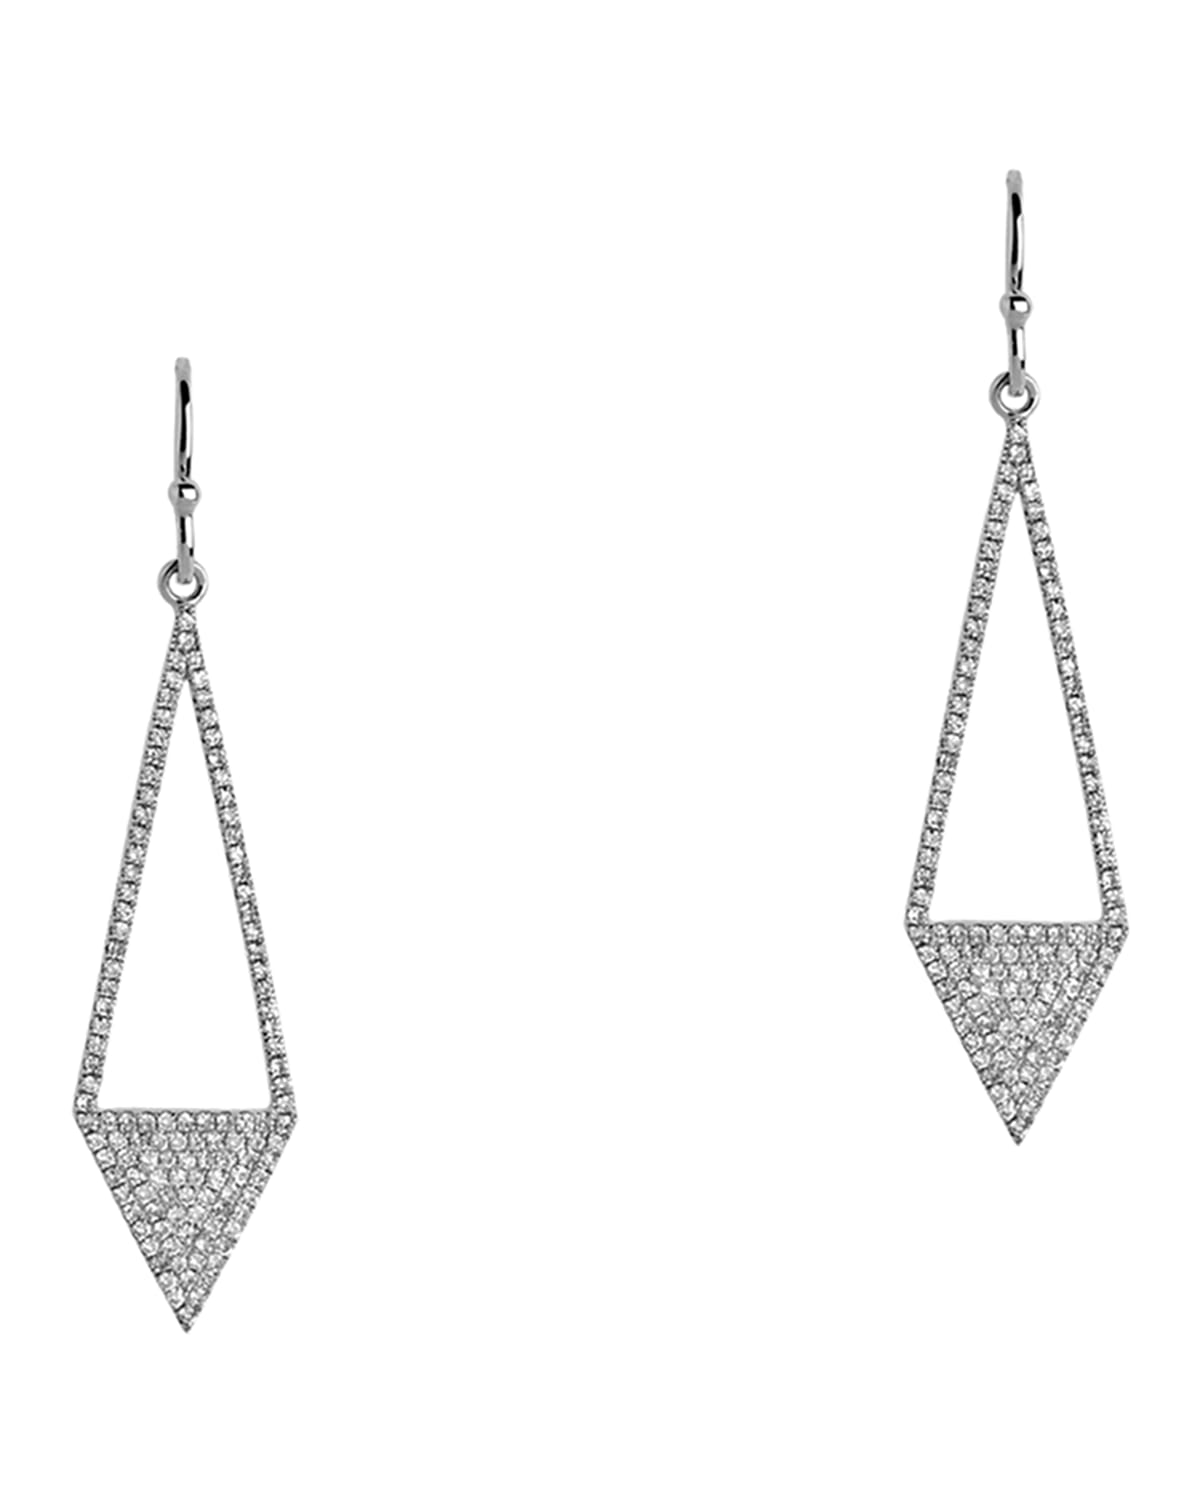 Bridget King Jewelry 14k Diamond Arrow Earrings